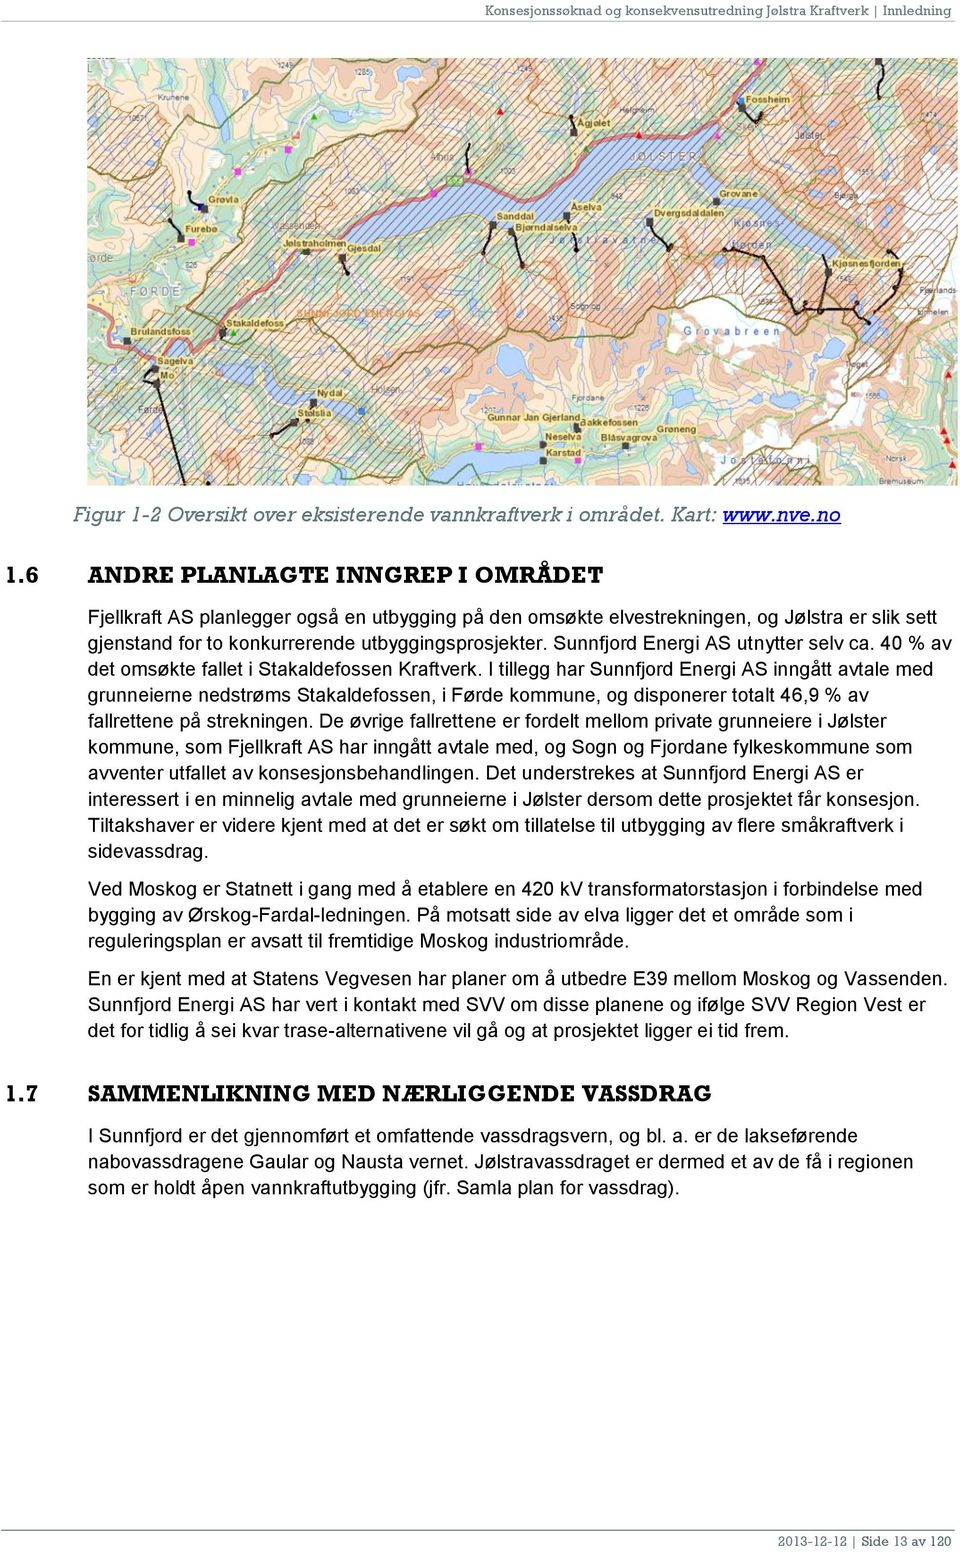 Sunnfjord Energi AS utnytter selv ca. 40 % av det omsøkte fallet i Stakaldefossen Kraftverk.